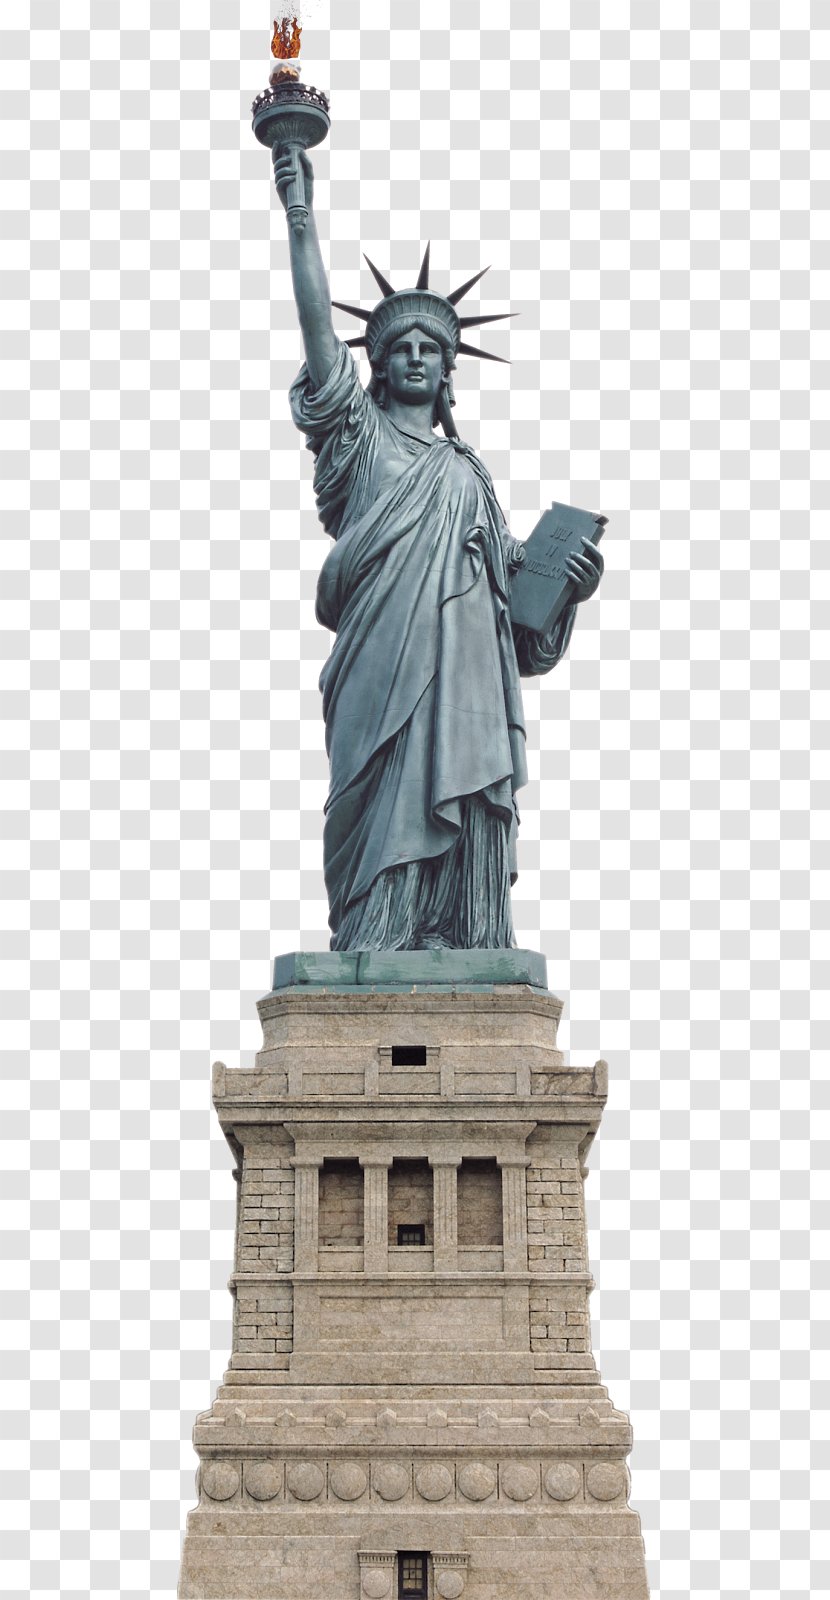 Statue Of Liberty Monument Sculpture Image - Paris London Transparent PNG